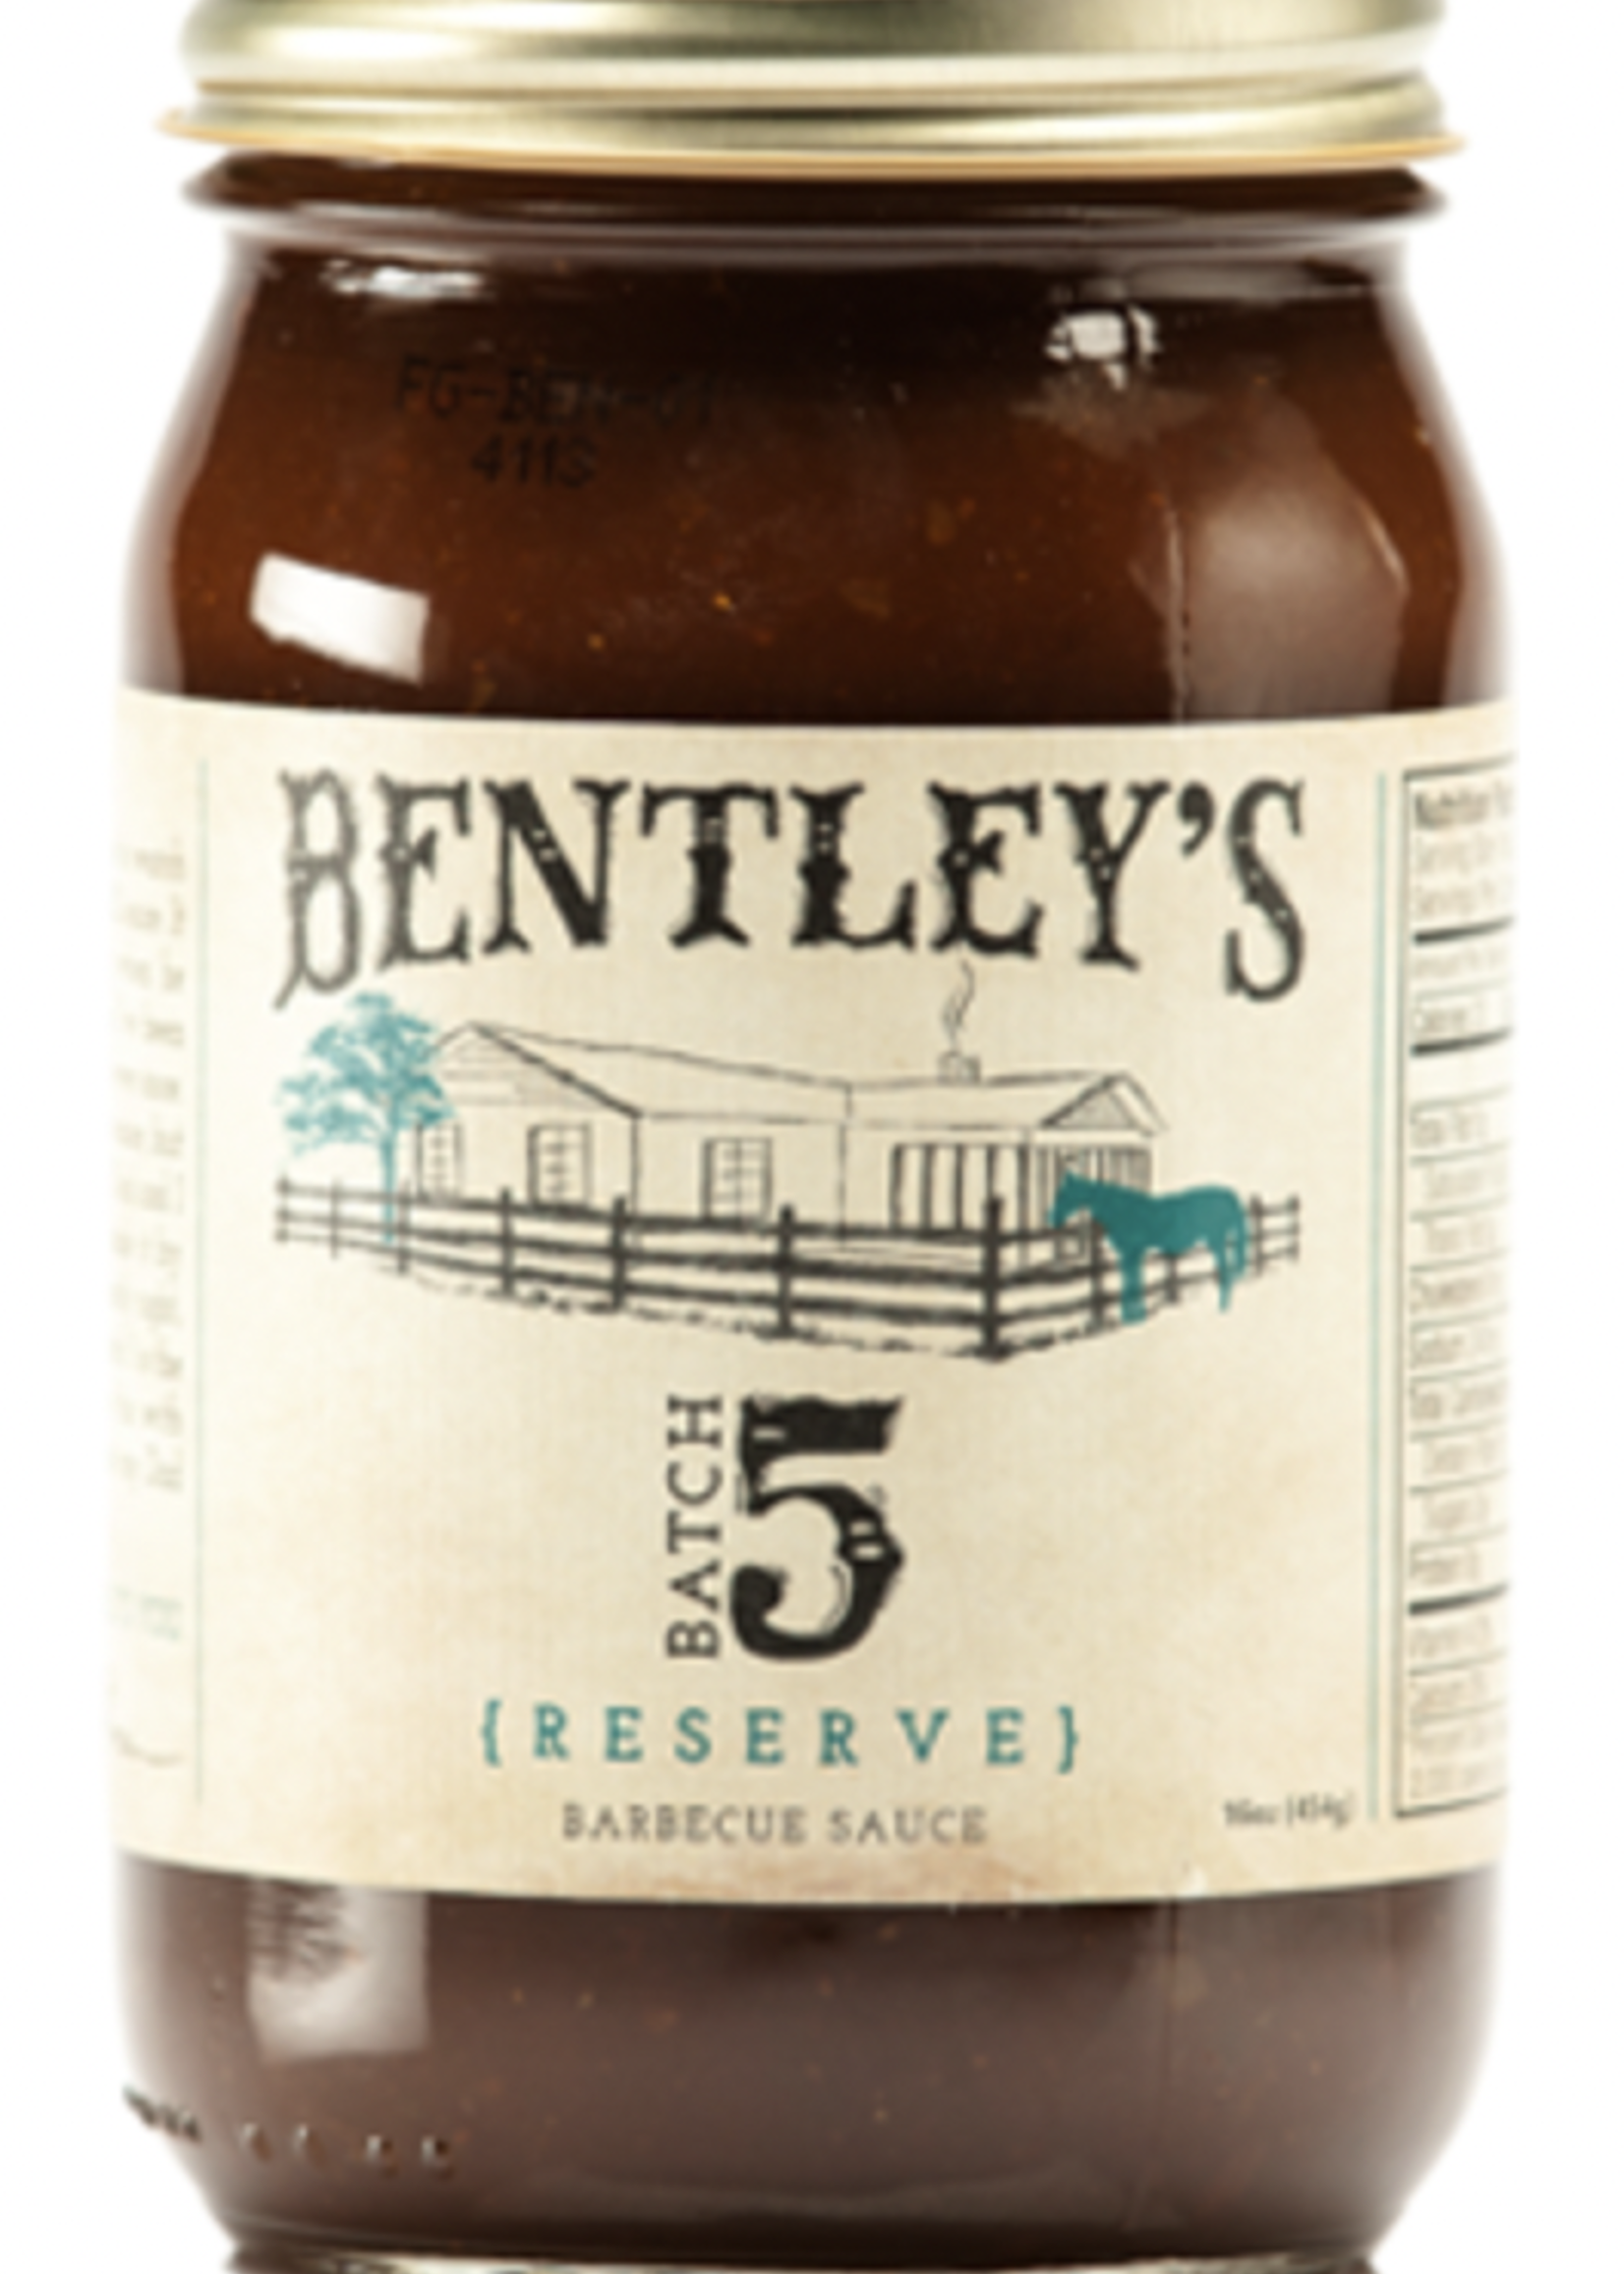 Bentley's Batch 5 Reserve BBQ Sauce